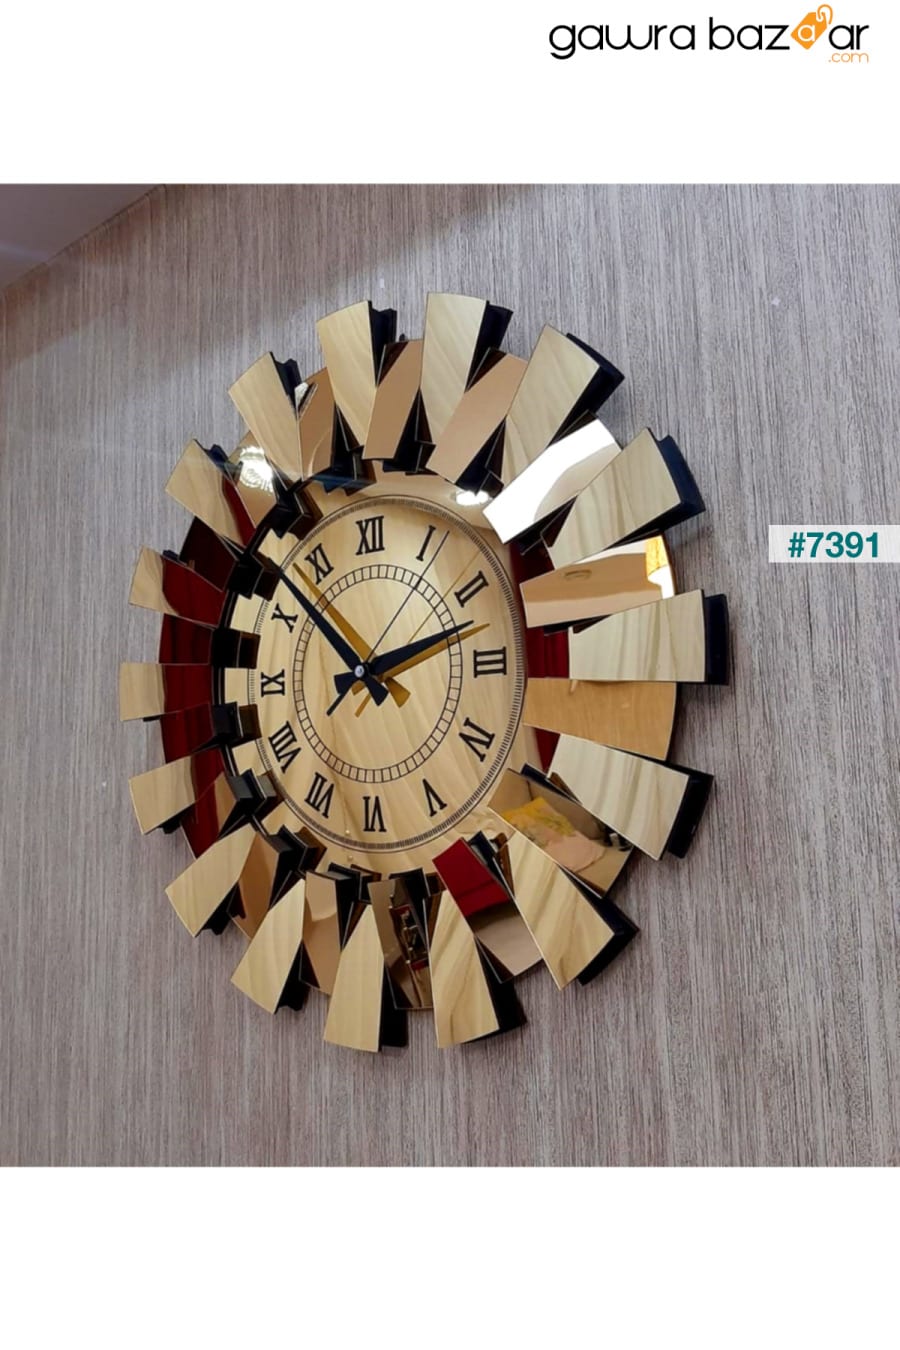 نموذج بيانو ثلاثي الأبعاد ساعة حائط معكوسة أرقام رومانية ذهبية TUĞBArt 7